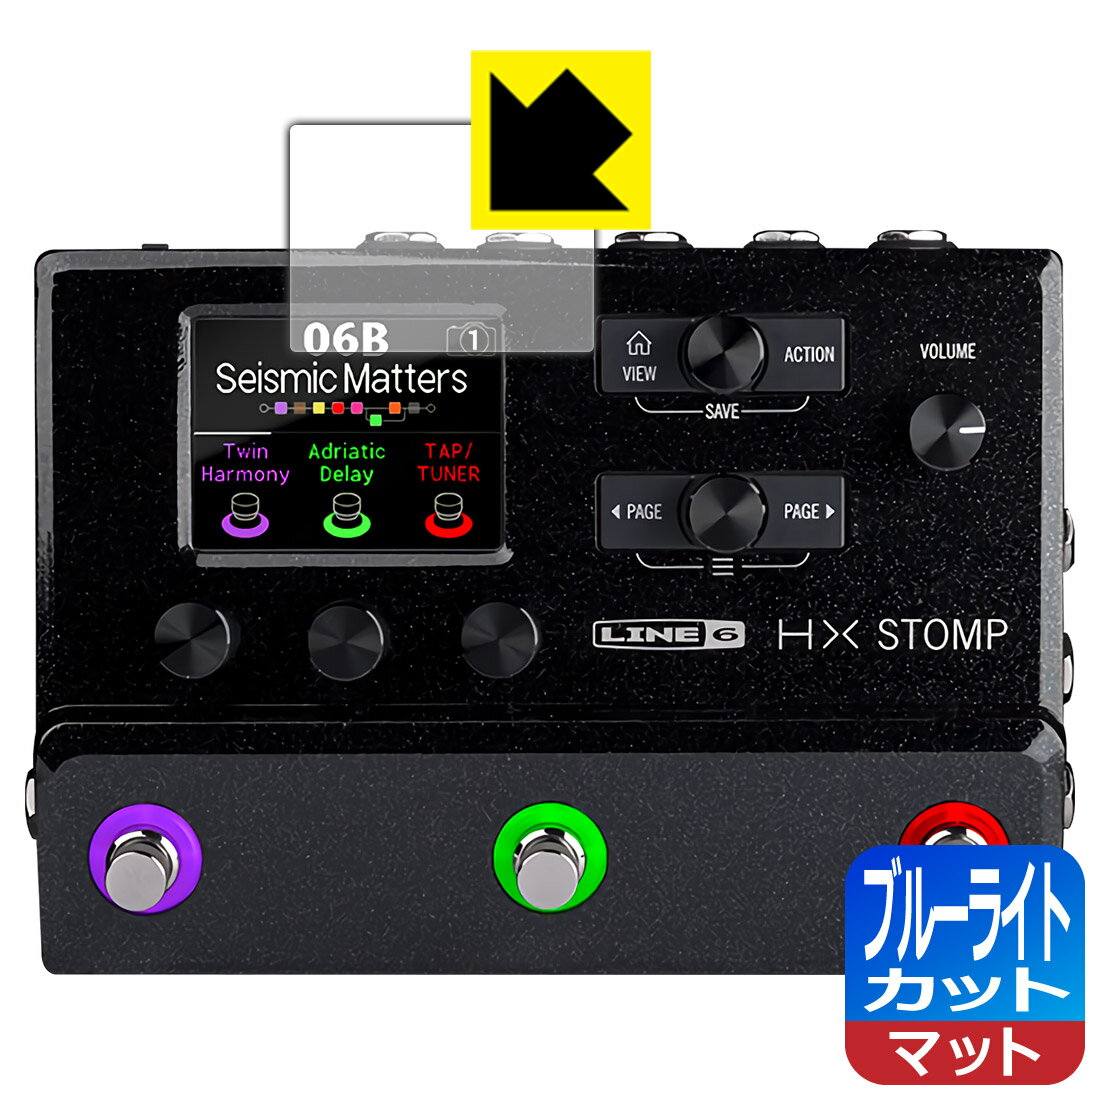 ブルーライトカット【反射低減】保護フィルム Line 6 HX Stomp / HX Stomp XL (メイン画面用) 日本製 自社製造直販